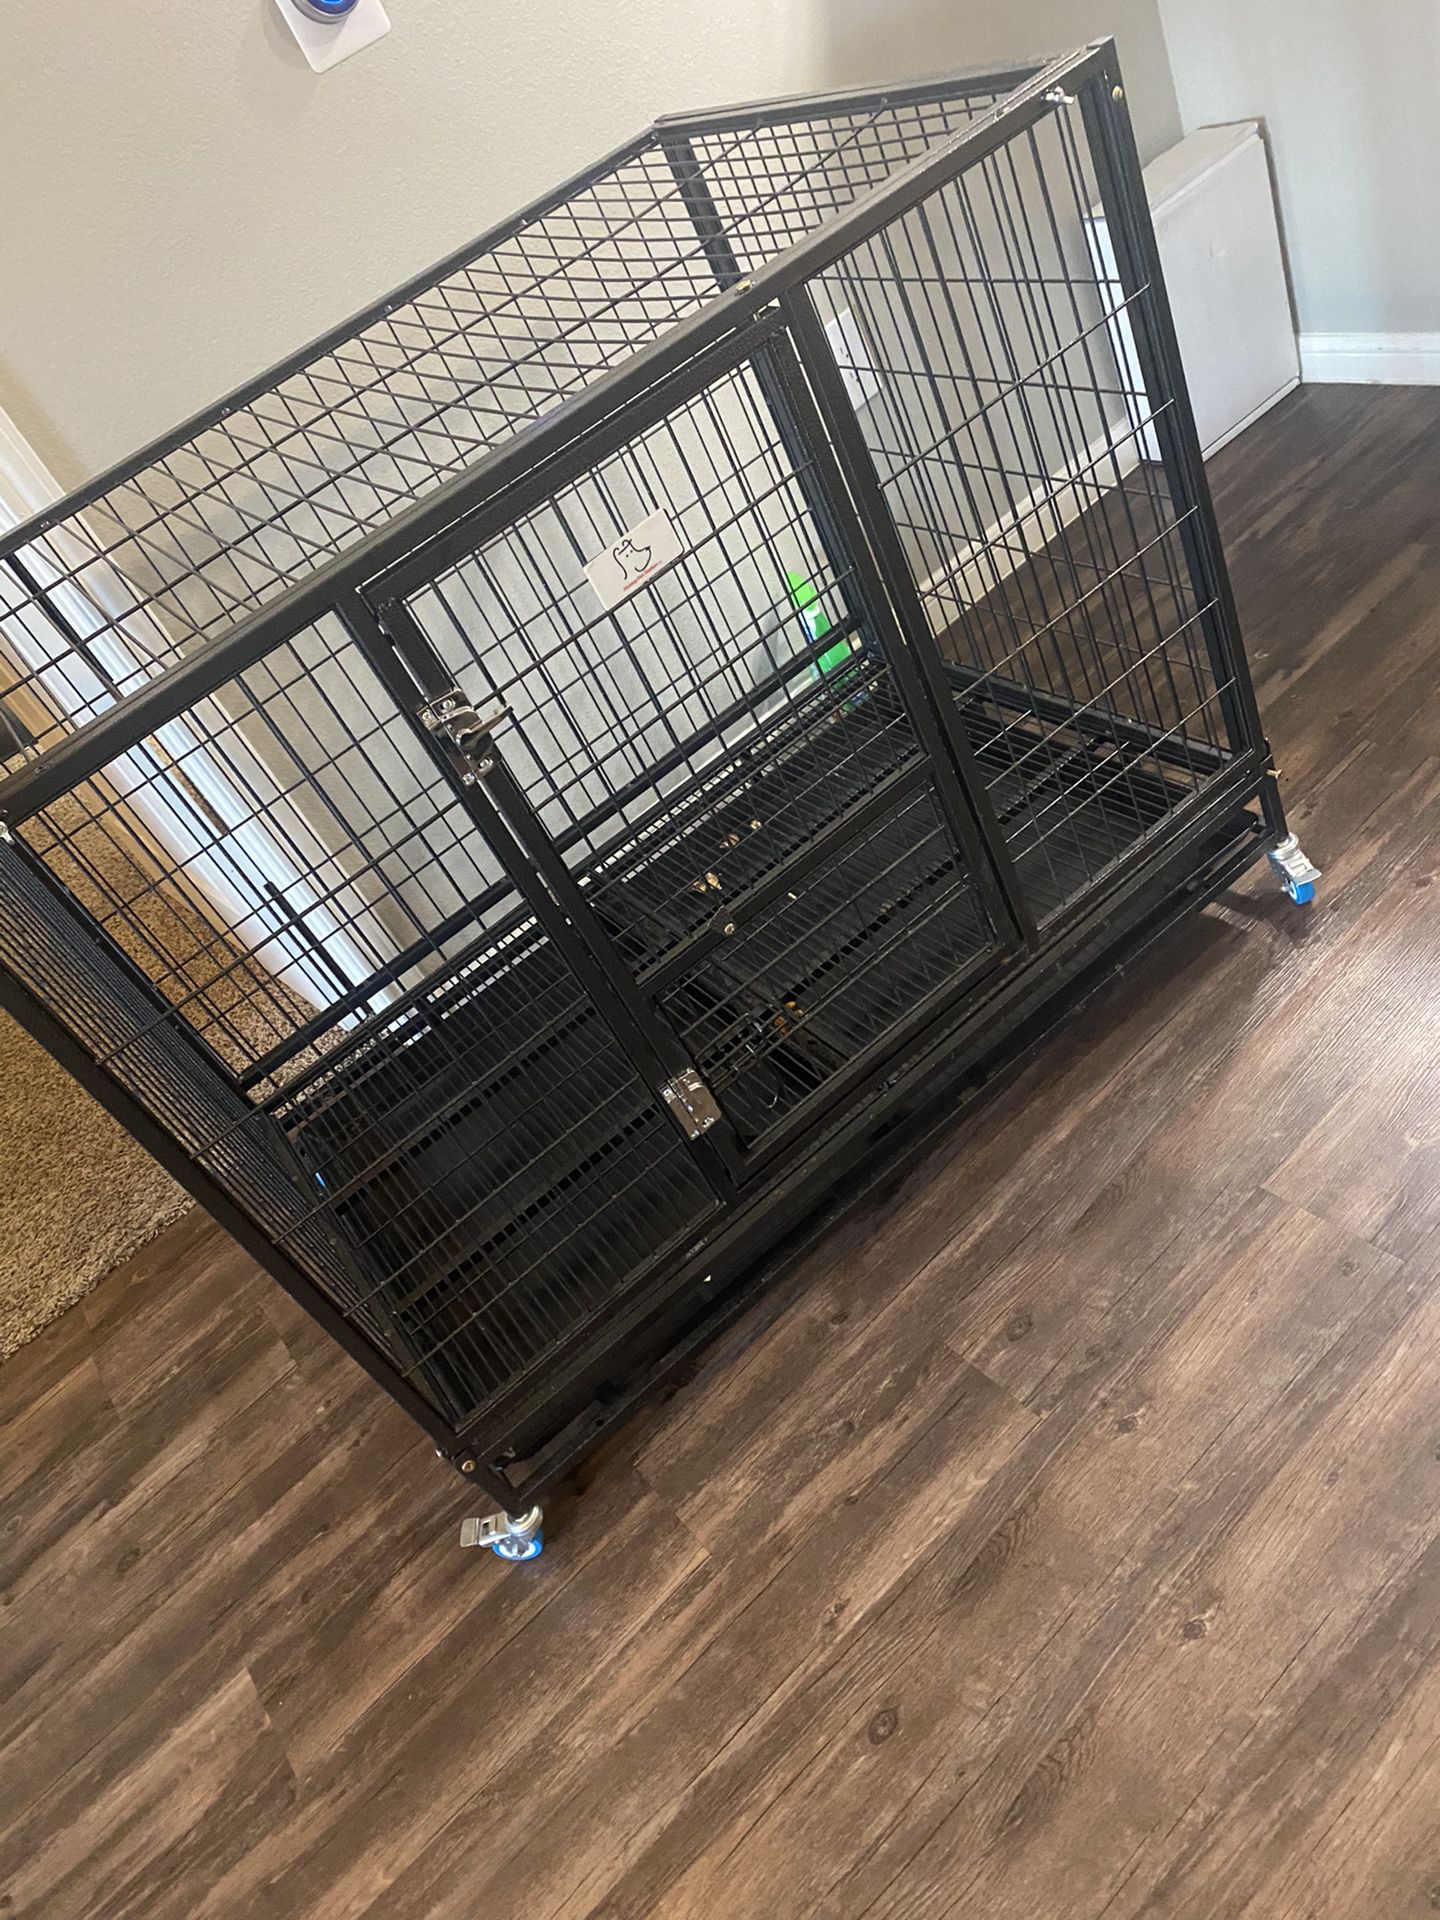 Dog drop cage